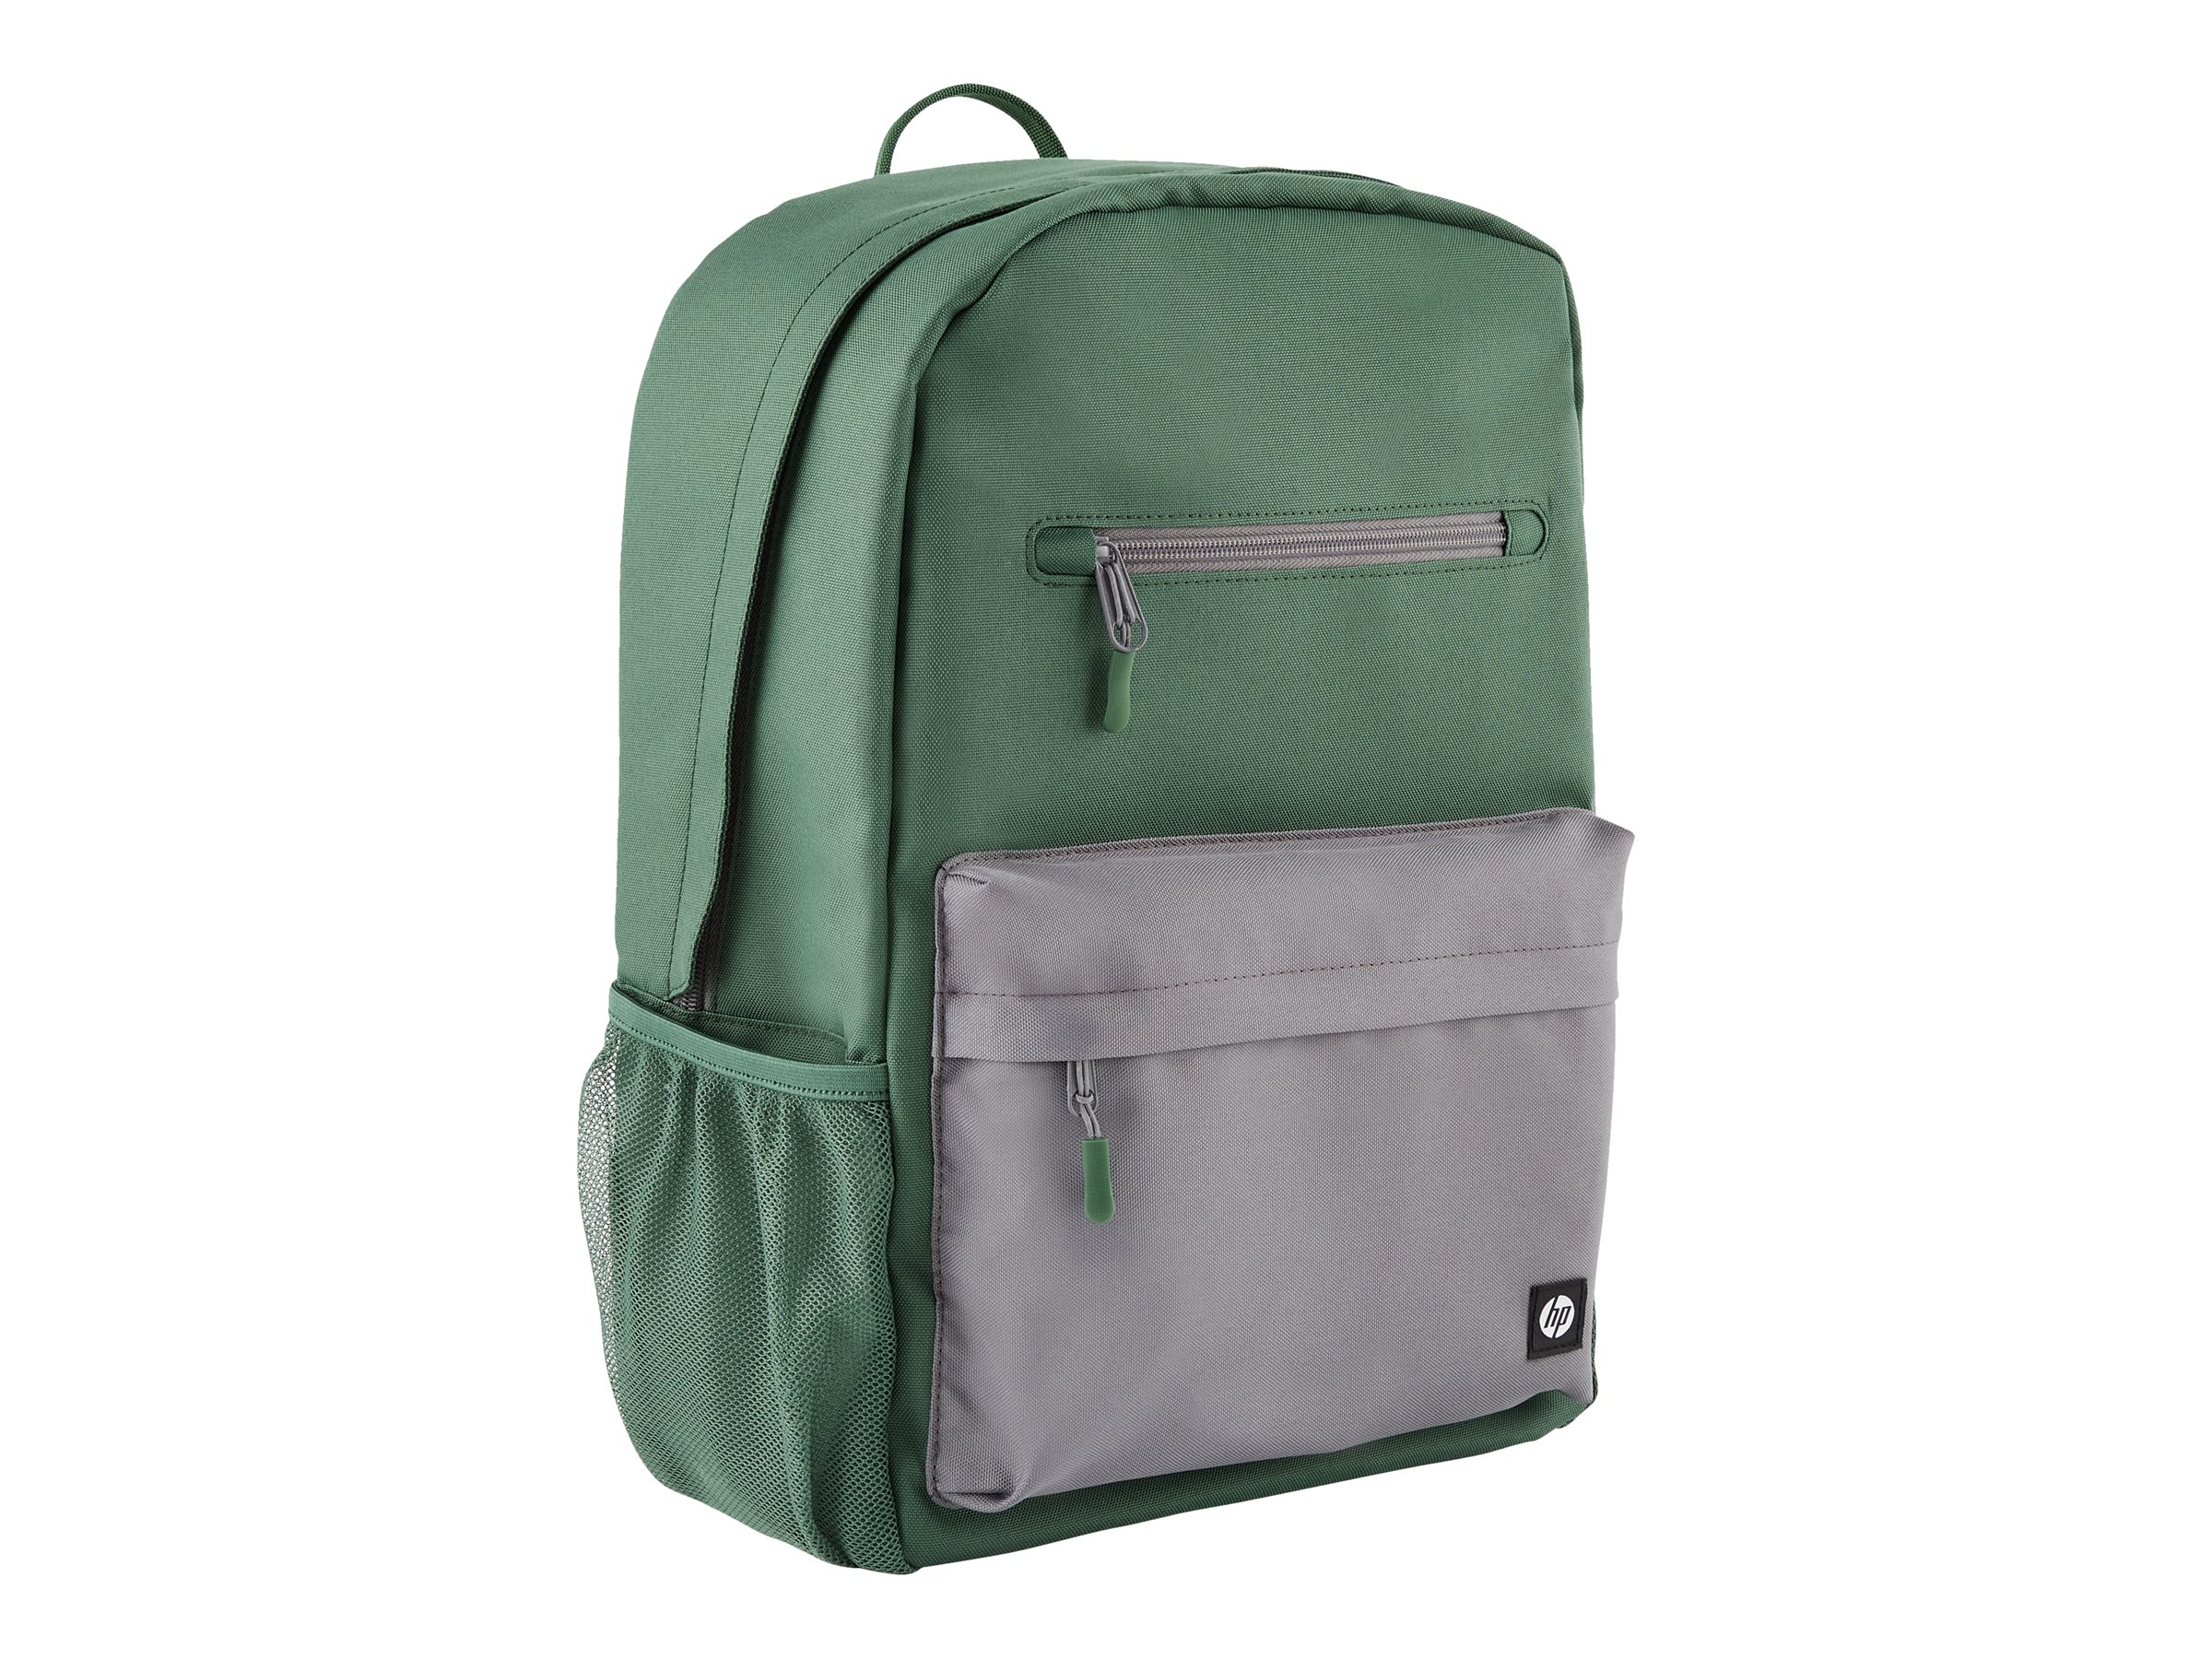 HP - Campus - sac à dos pour ordinateur portable - 15.6" - gris, vert - 7J595AA - Sacoches pour ordinateur portable